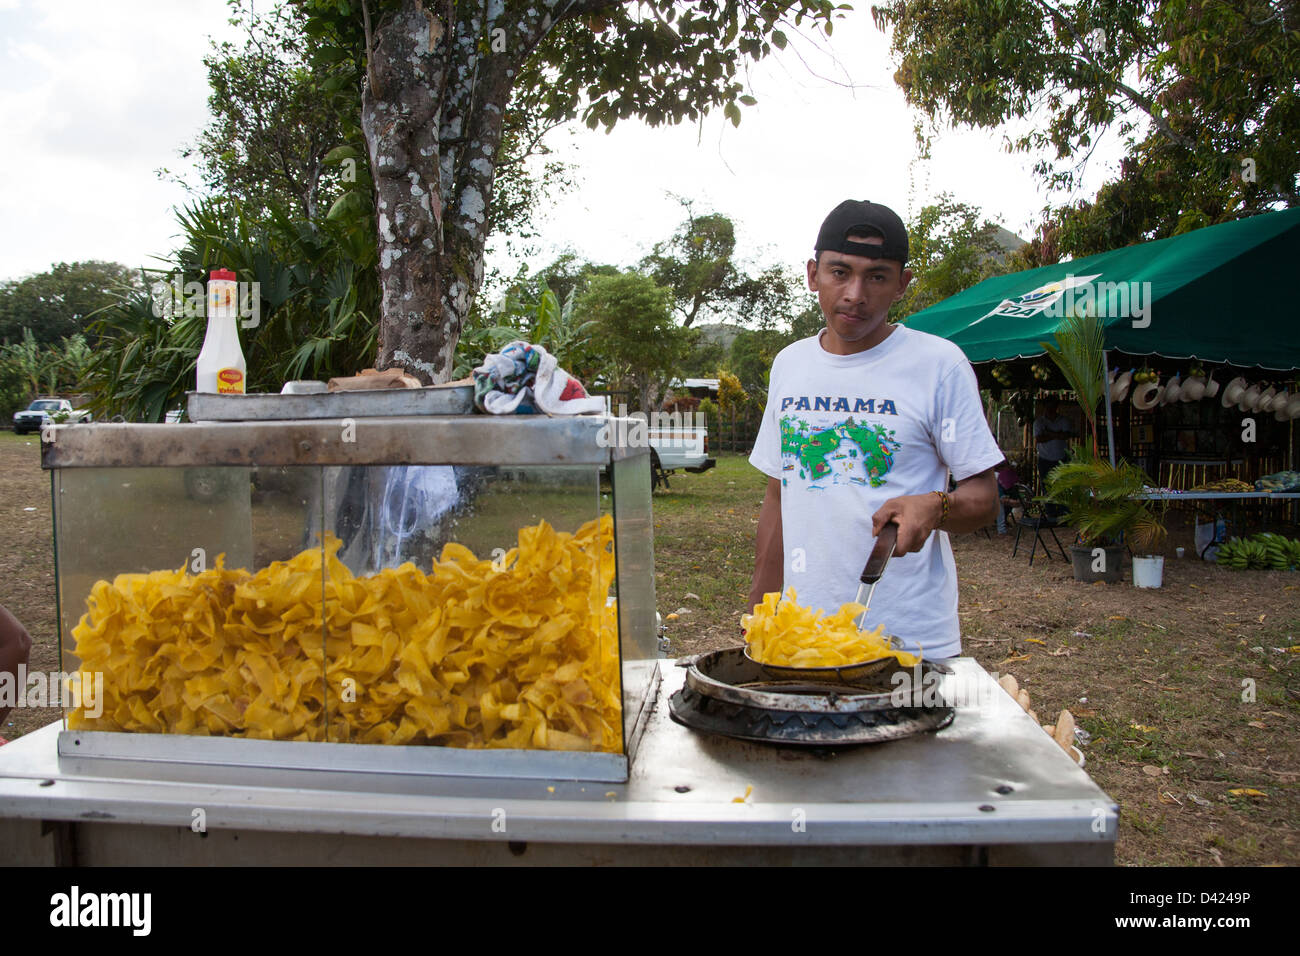 Anbieter verkaufen gebratenen Kochbananen chips auf einem Folklorefestival. Stockfoto